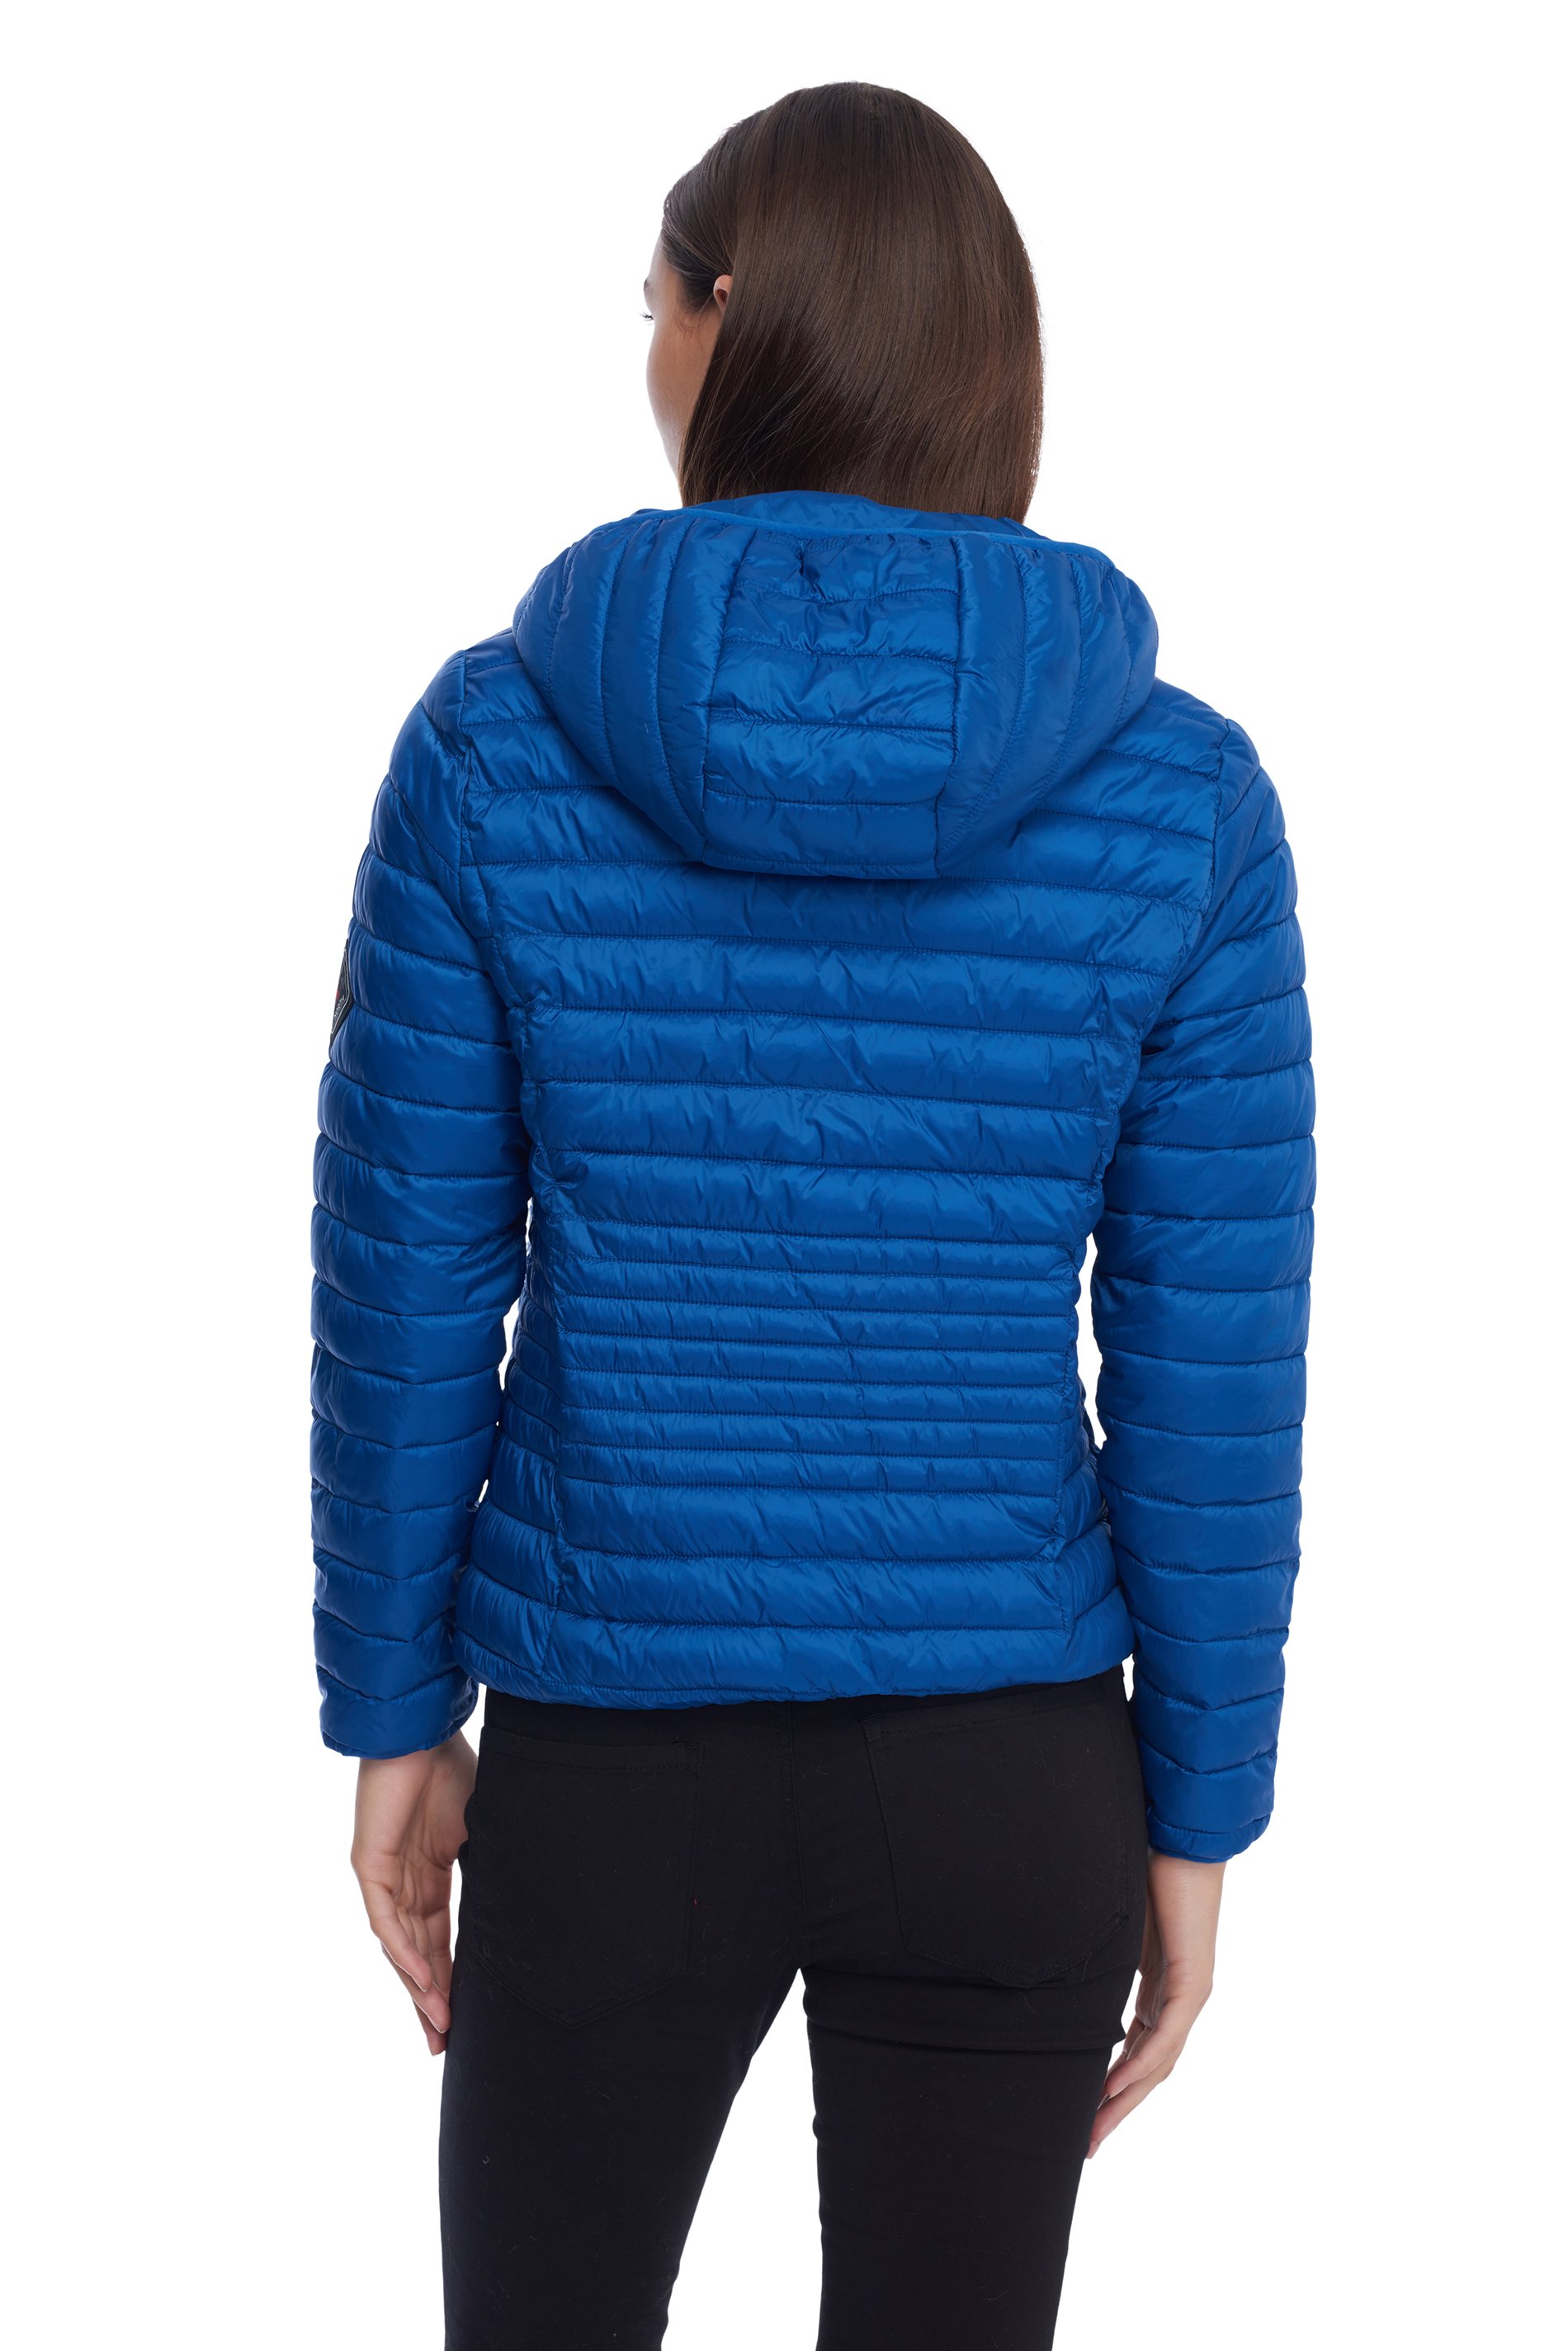 Alpine North Women's Vegan Down Lightweight Packable Puffer Jacket & Bag